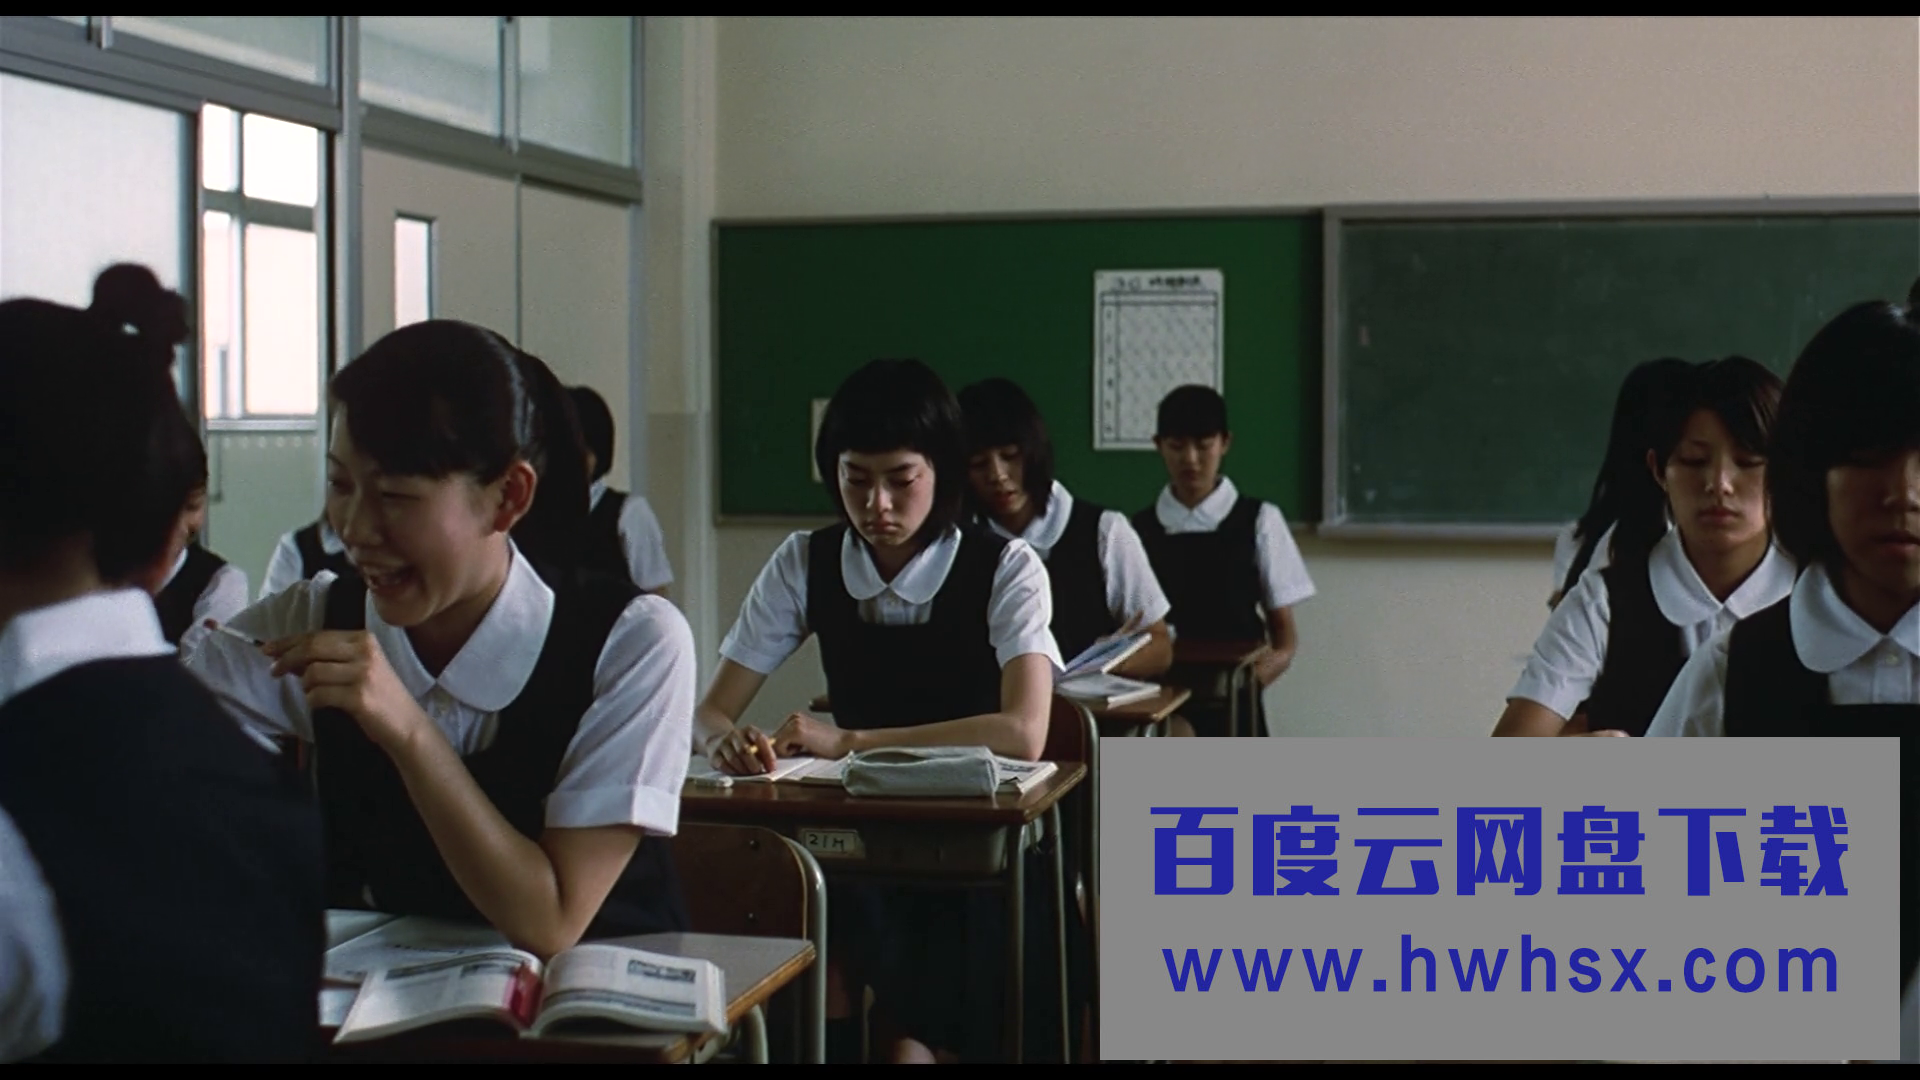 2002日本爱情同性《蓝色大海》HD1080P.日语中字4k|1080p高清百度网盘